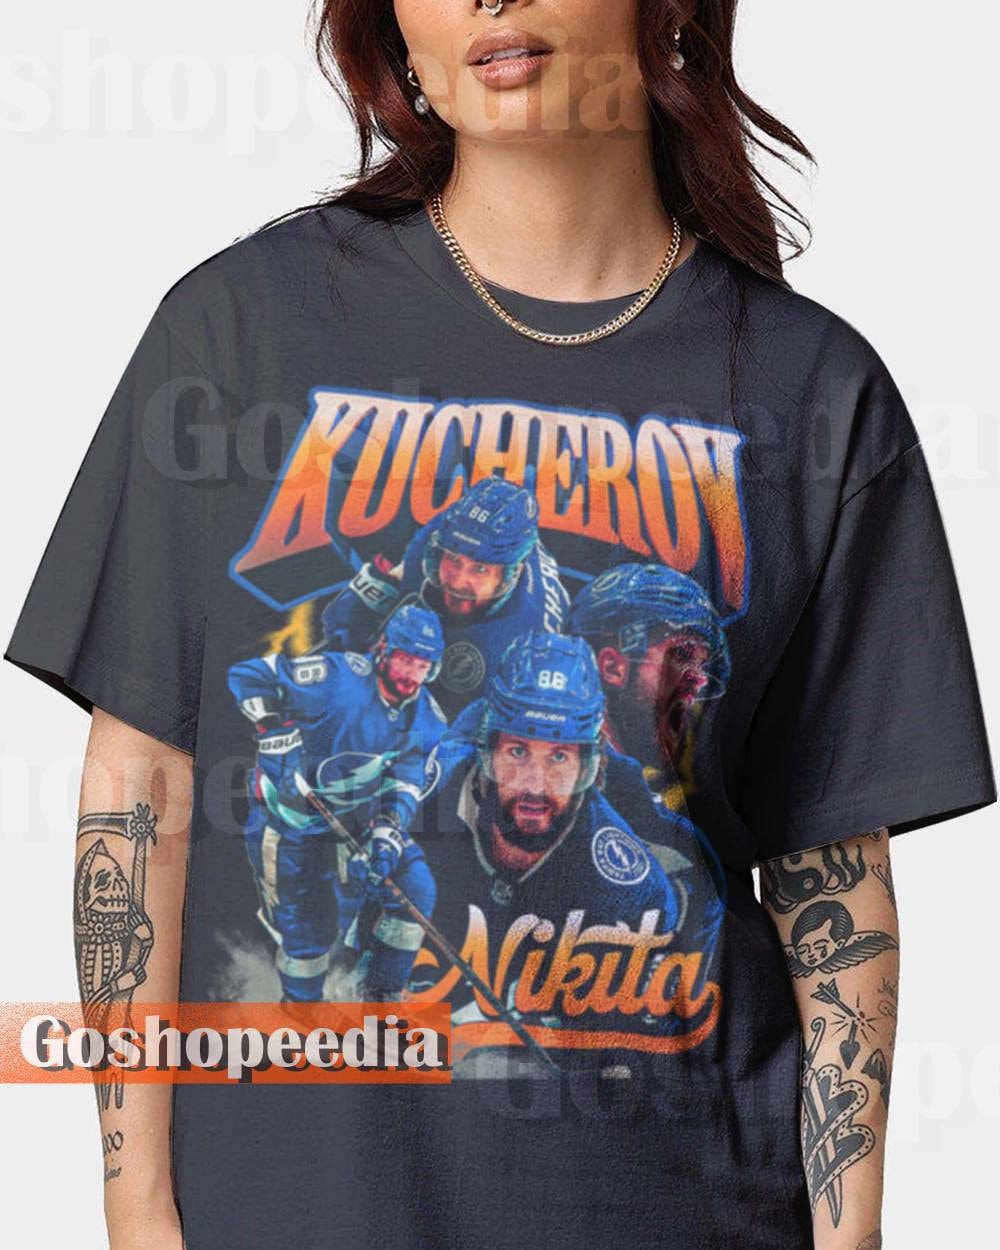 Nikita Kucherov $18 over the cap shirt - Dalatshirt